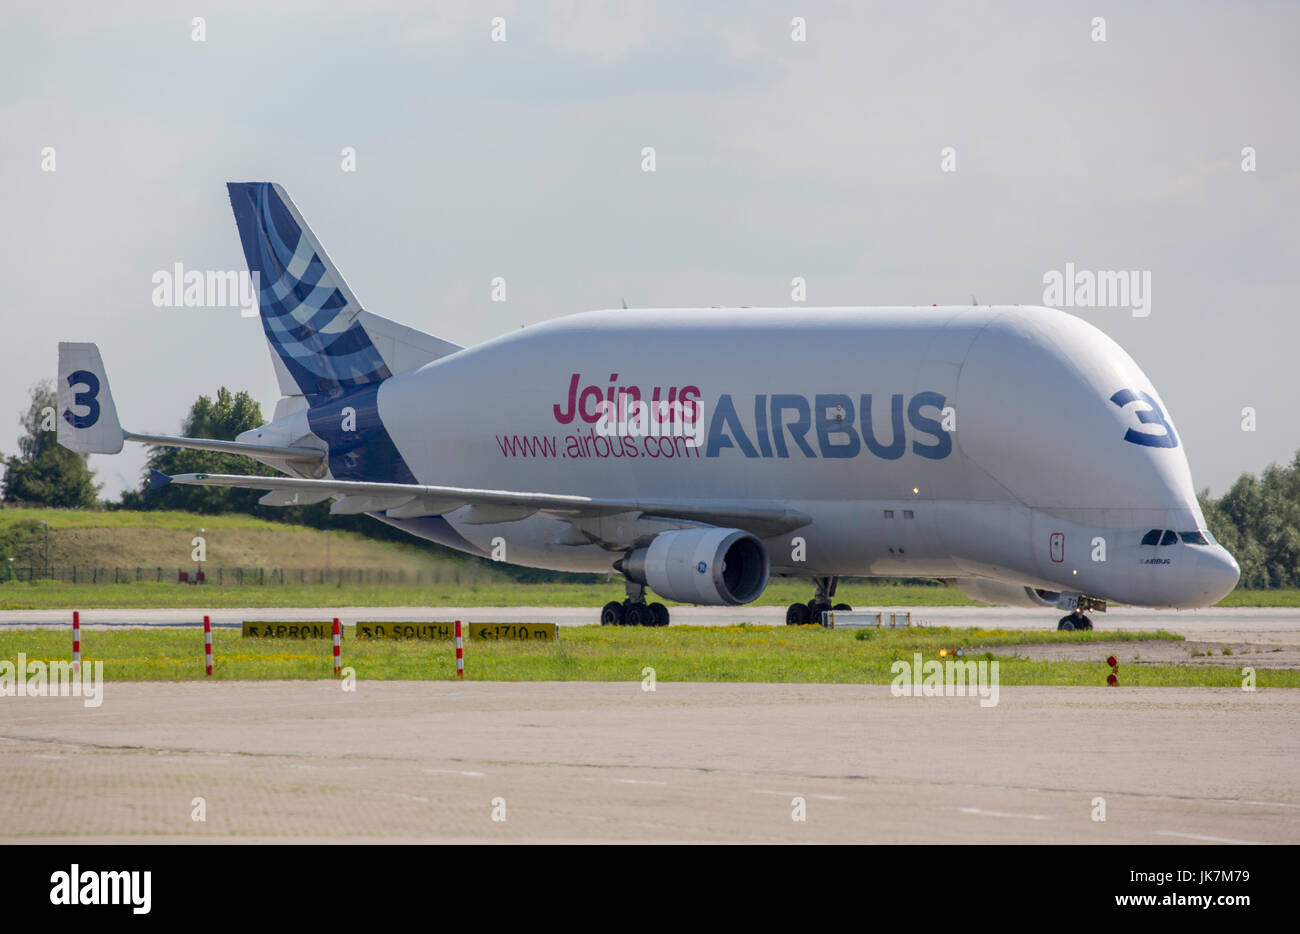 El Airbus A300-600ST, conocido como el "Beluga" por su singular parecido con el rorcual menor dispone de una de las mejores bodegas de toda aeronave Foto de stock